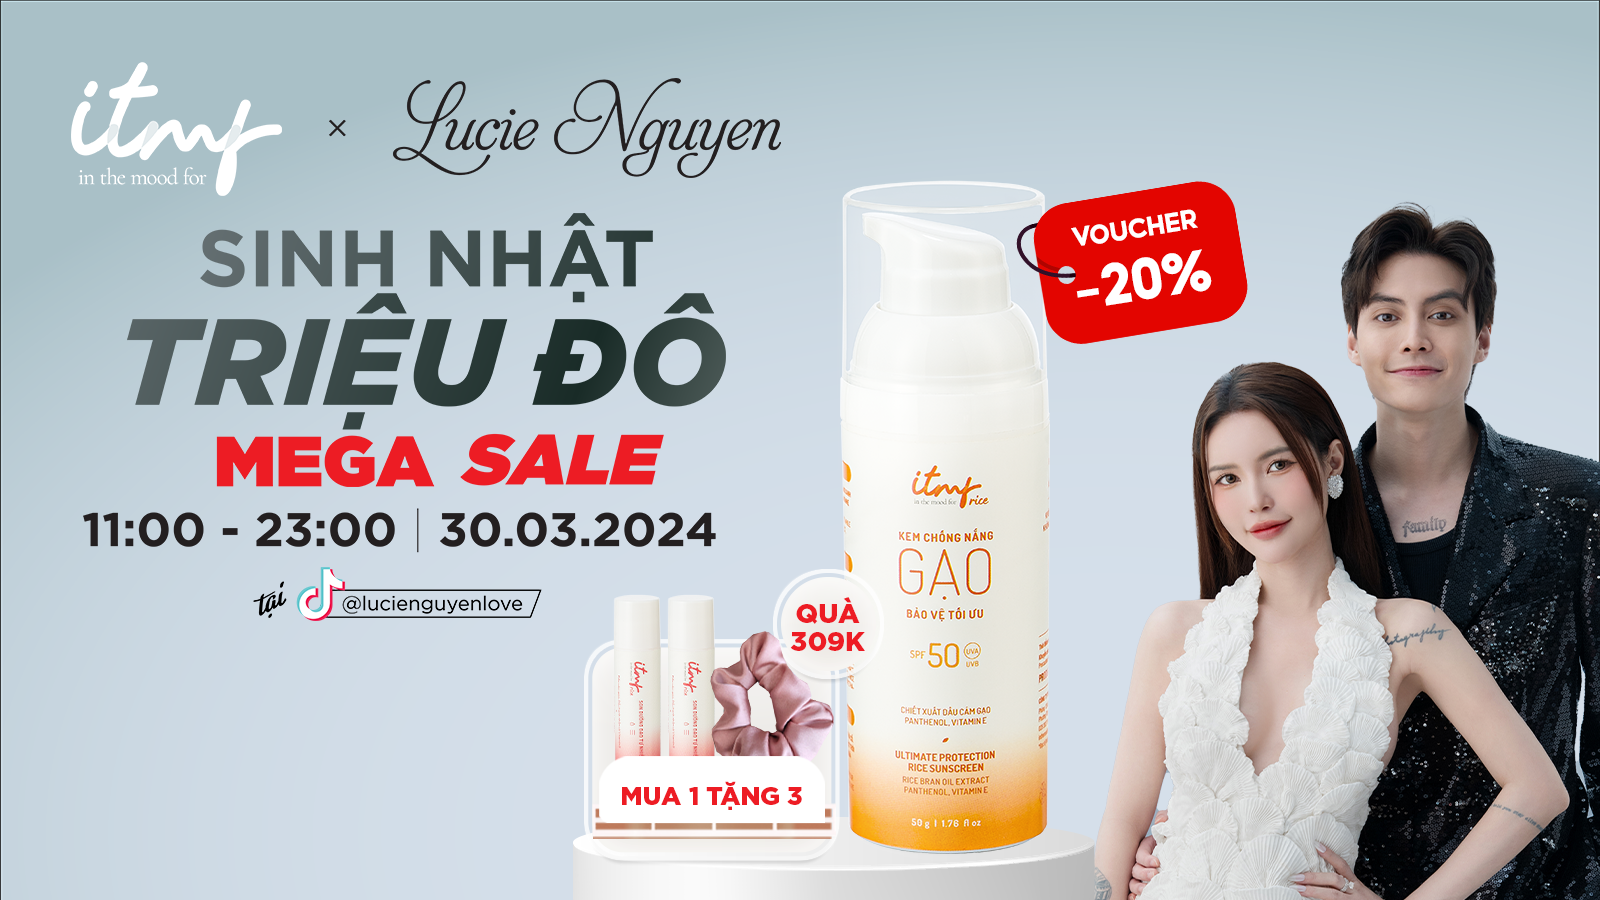 Săn Deal Độc Quyền #ITMF Ngay Tại Mega Sale Của Lucie Nguyễn